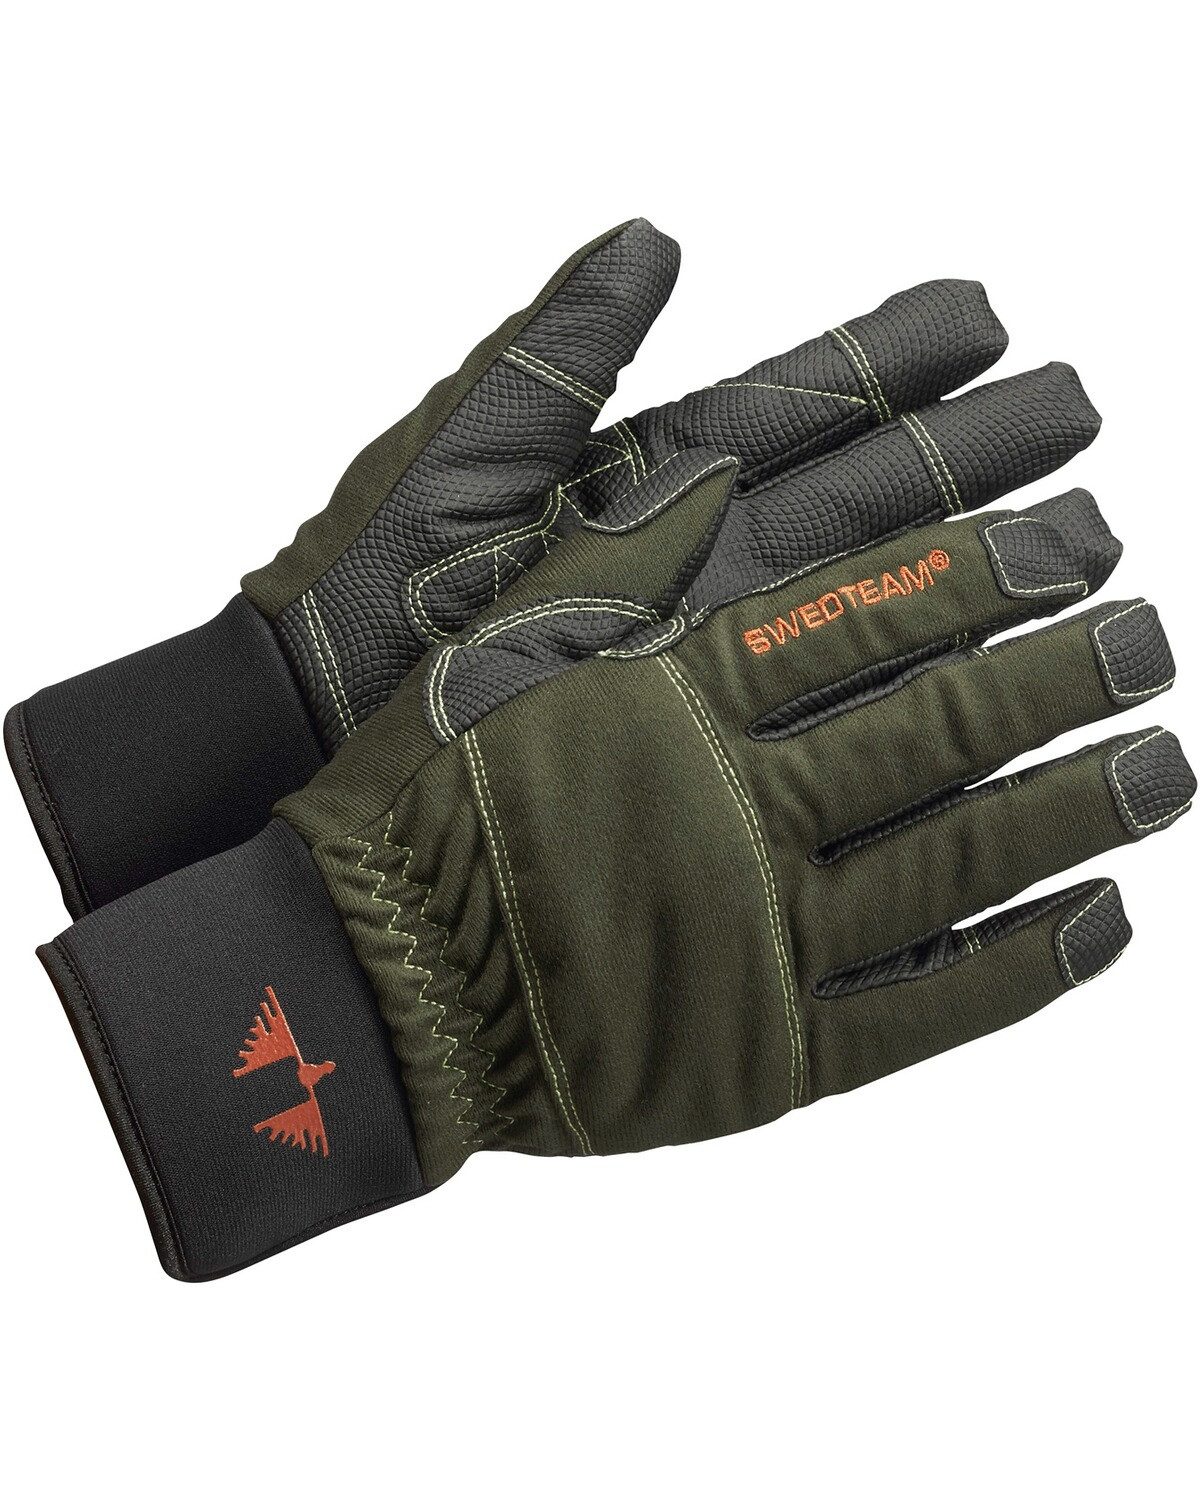 Swedteam Fleecehandschuhe Handschuhe Ultra Dry